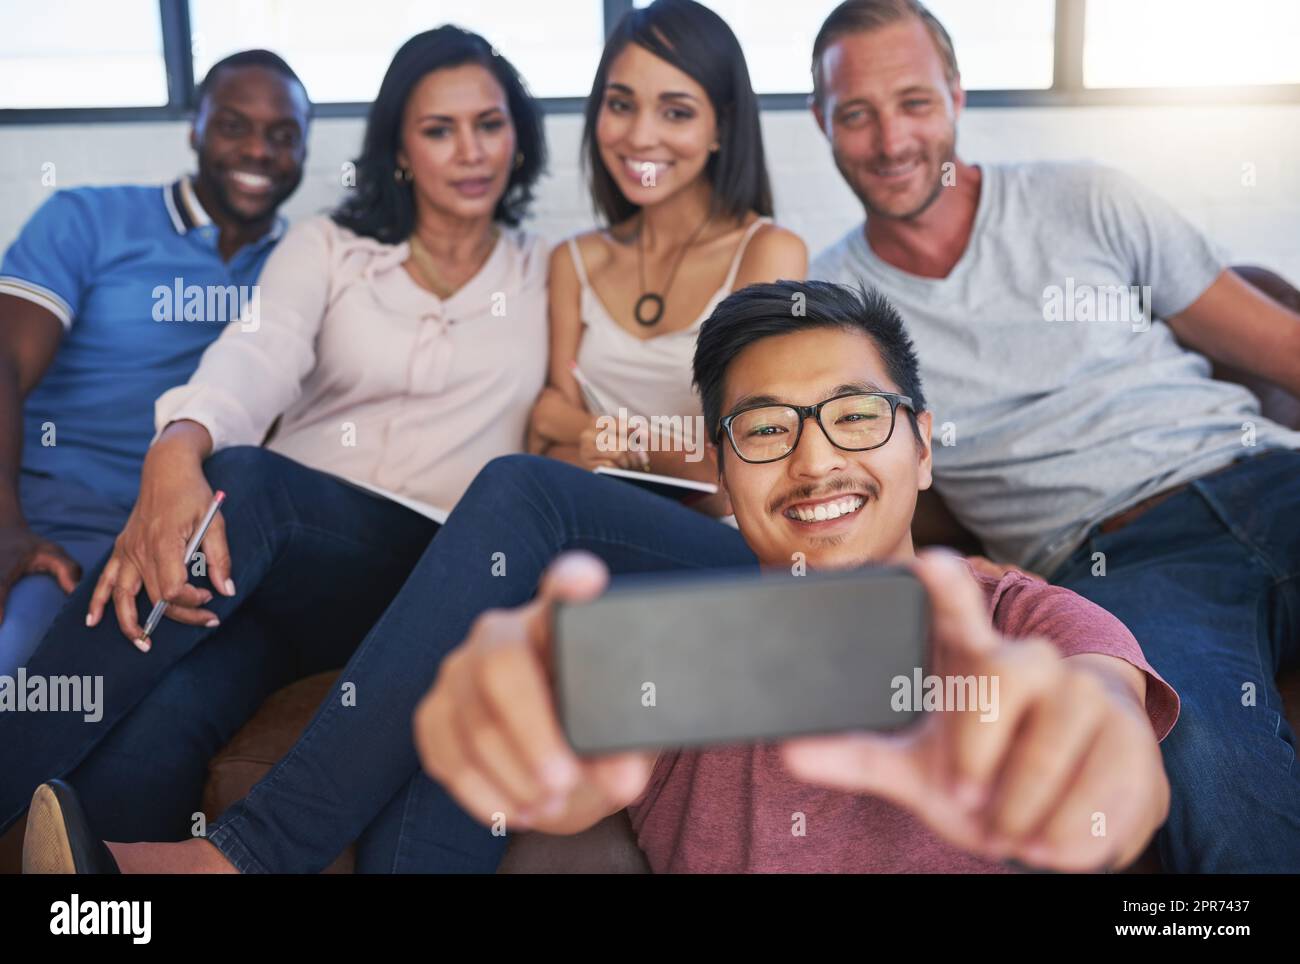 Es ist immer Zeit für ein Selfie am Arbeitstag. Aufnahme einer fröhlichen Gruppe kreativer Kollegen, die gemeinsam im Büro für ein Selfie posieren. Stockfoto